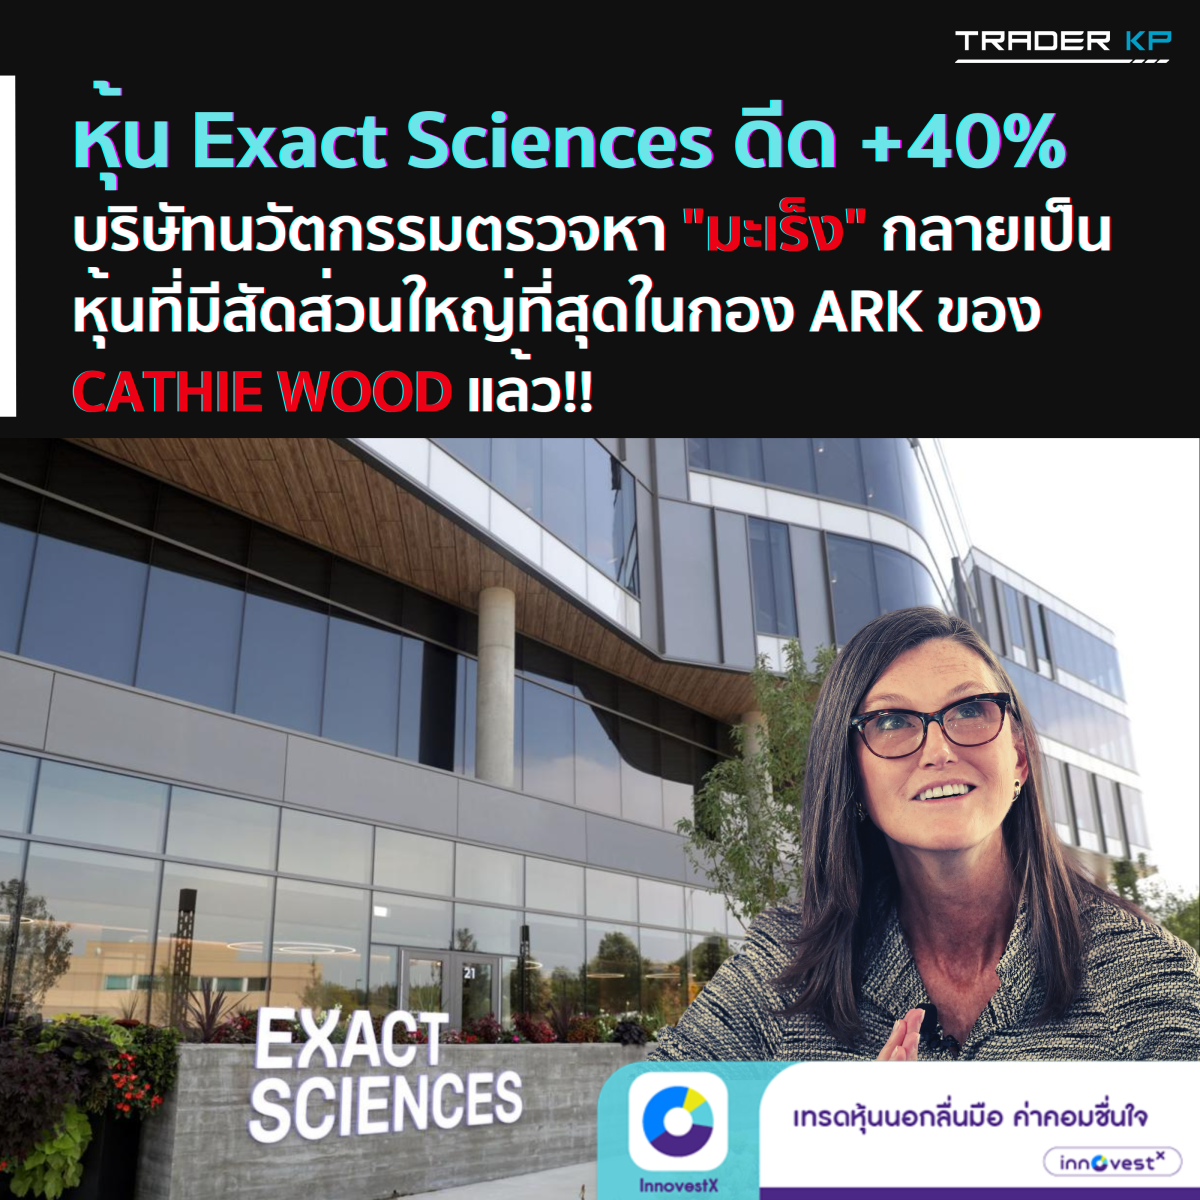 หุ้นบริษัท Exact Sciences ดีดขึ้นมา +40% ภายในเวลา 3 วัน จนบริษัทพัฒนานวัตกรรมด้านการตรวจหา “มะเร็ง” กลายเป็นหุ้นที่มีสัดส่วนใหญ่ที่สุดในกอง ARK Invest ของ Cathie Wood แล้ว !